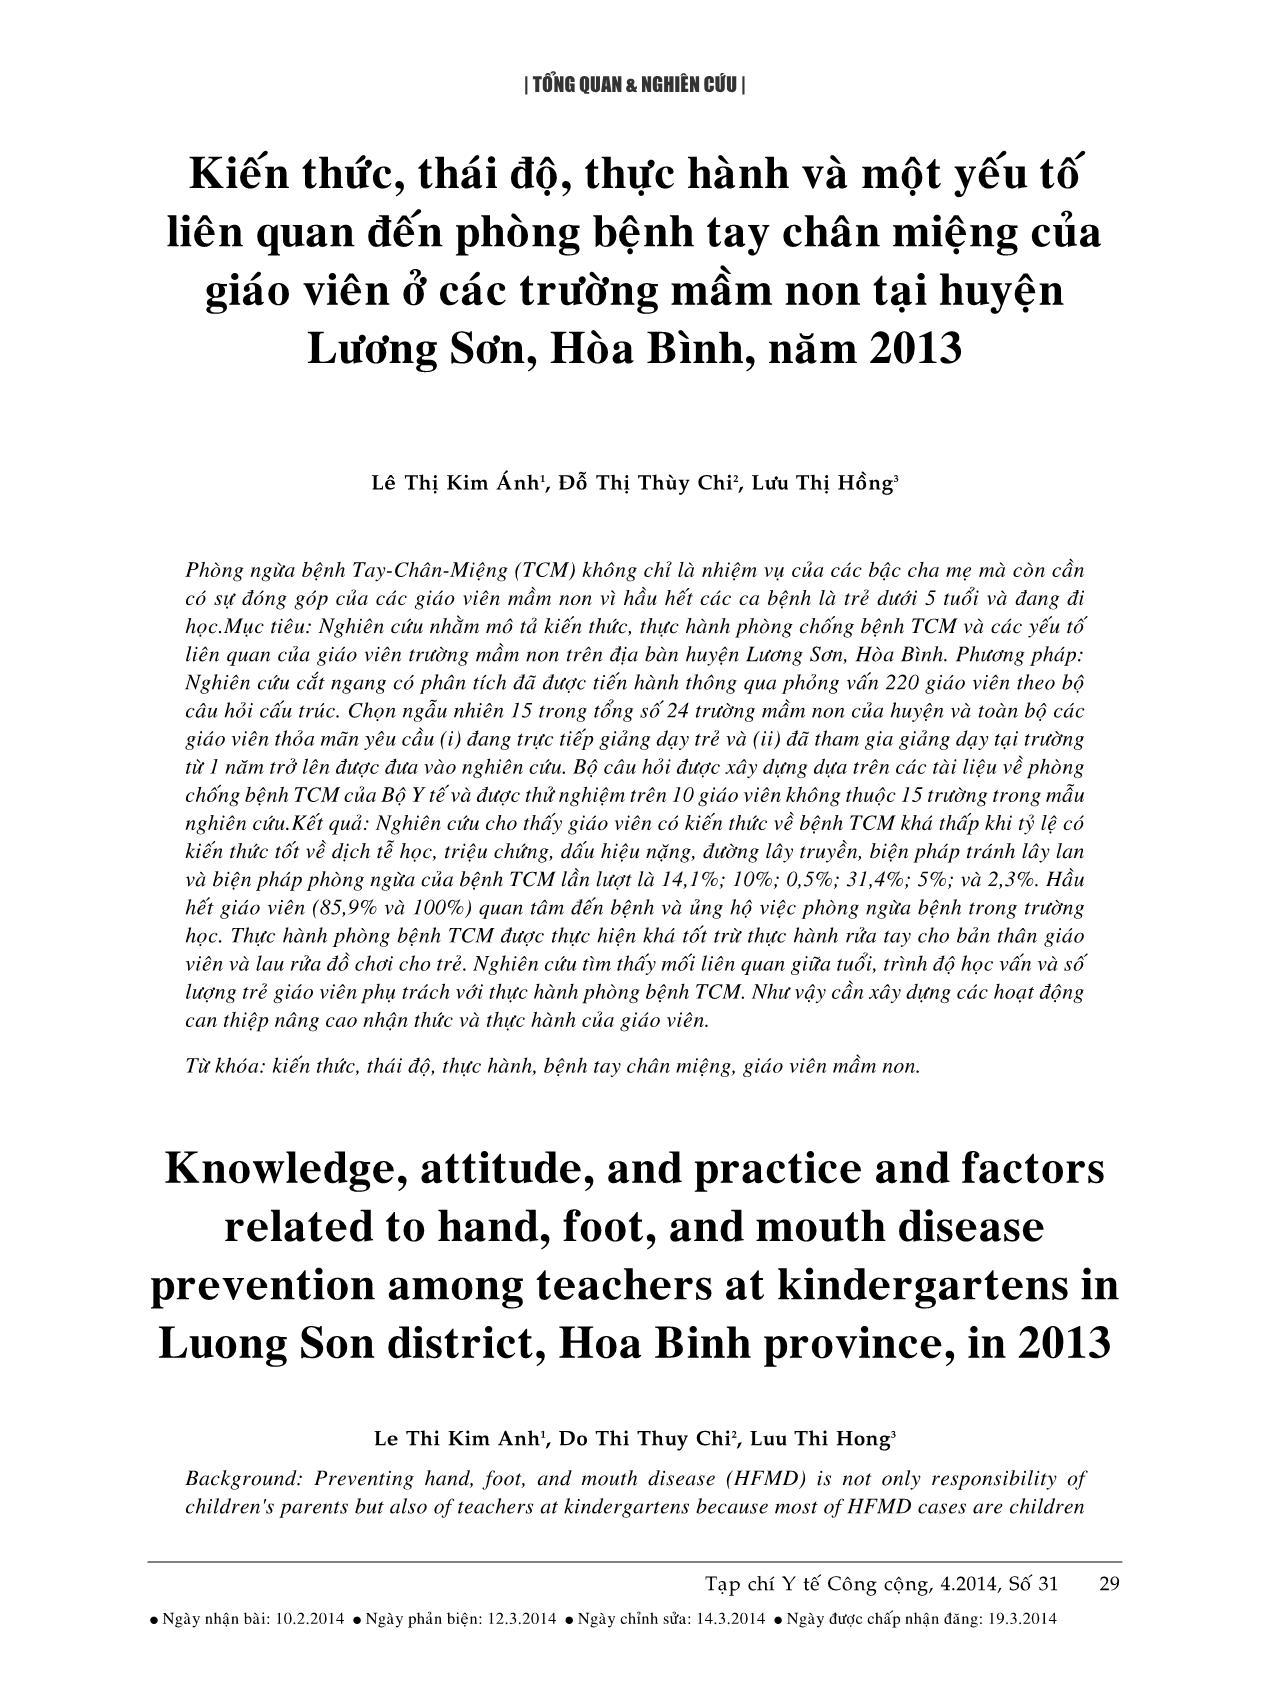 Kiến thức, thái độ, thực hành và một yếu tố liên quan đến phòng bệnh tay chân miệng của giáo viên ở các trường mầm non tại huyện Lương Sơn, Hòa Bình, năm 2013 trang 1